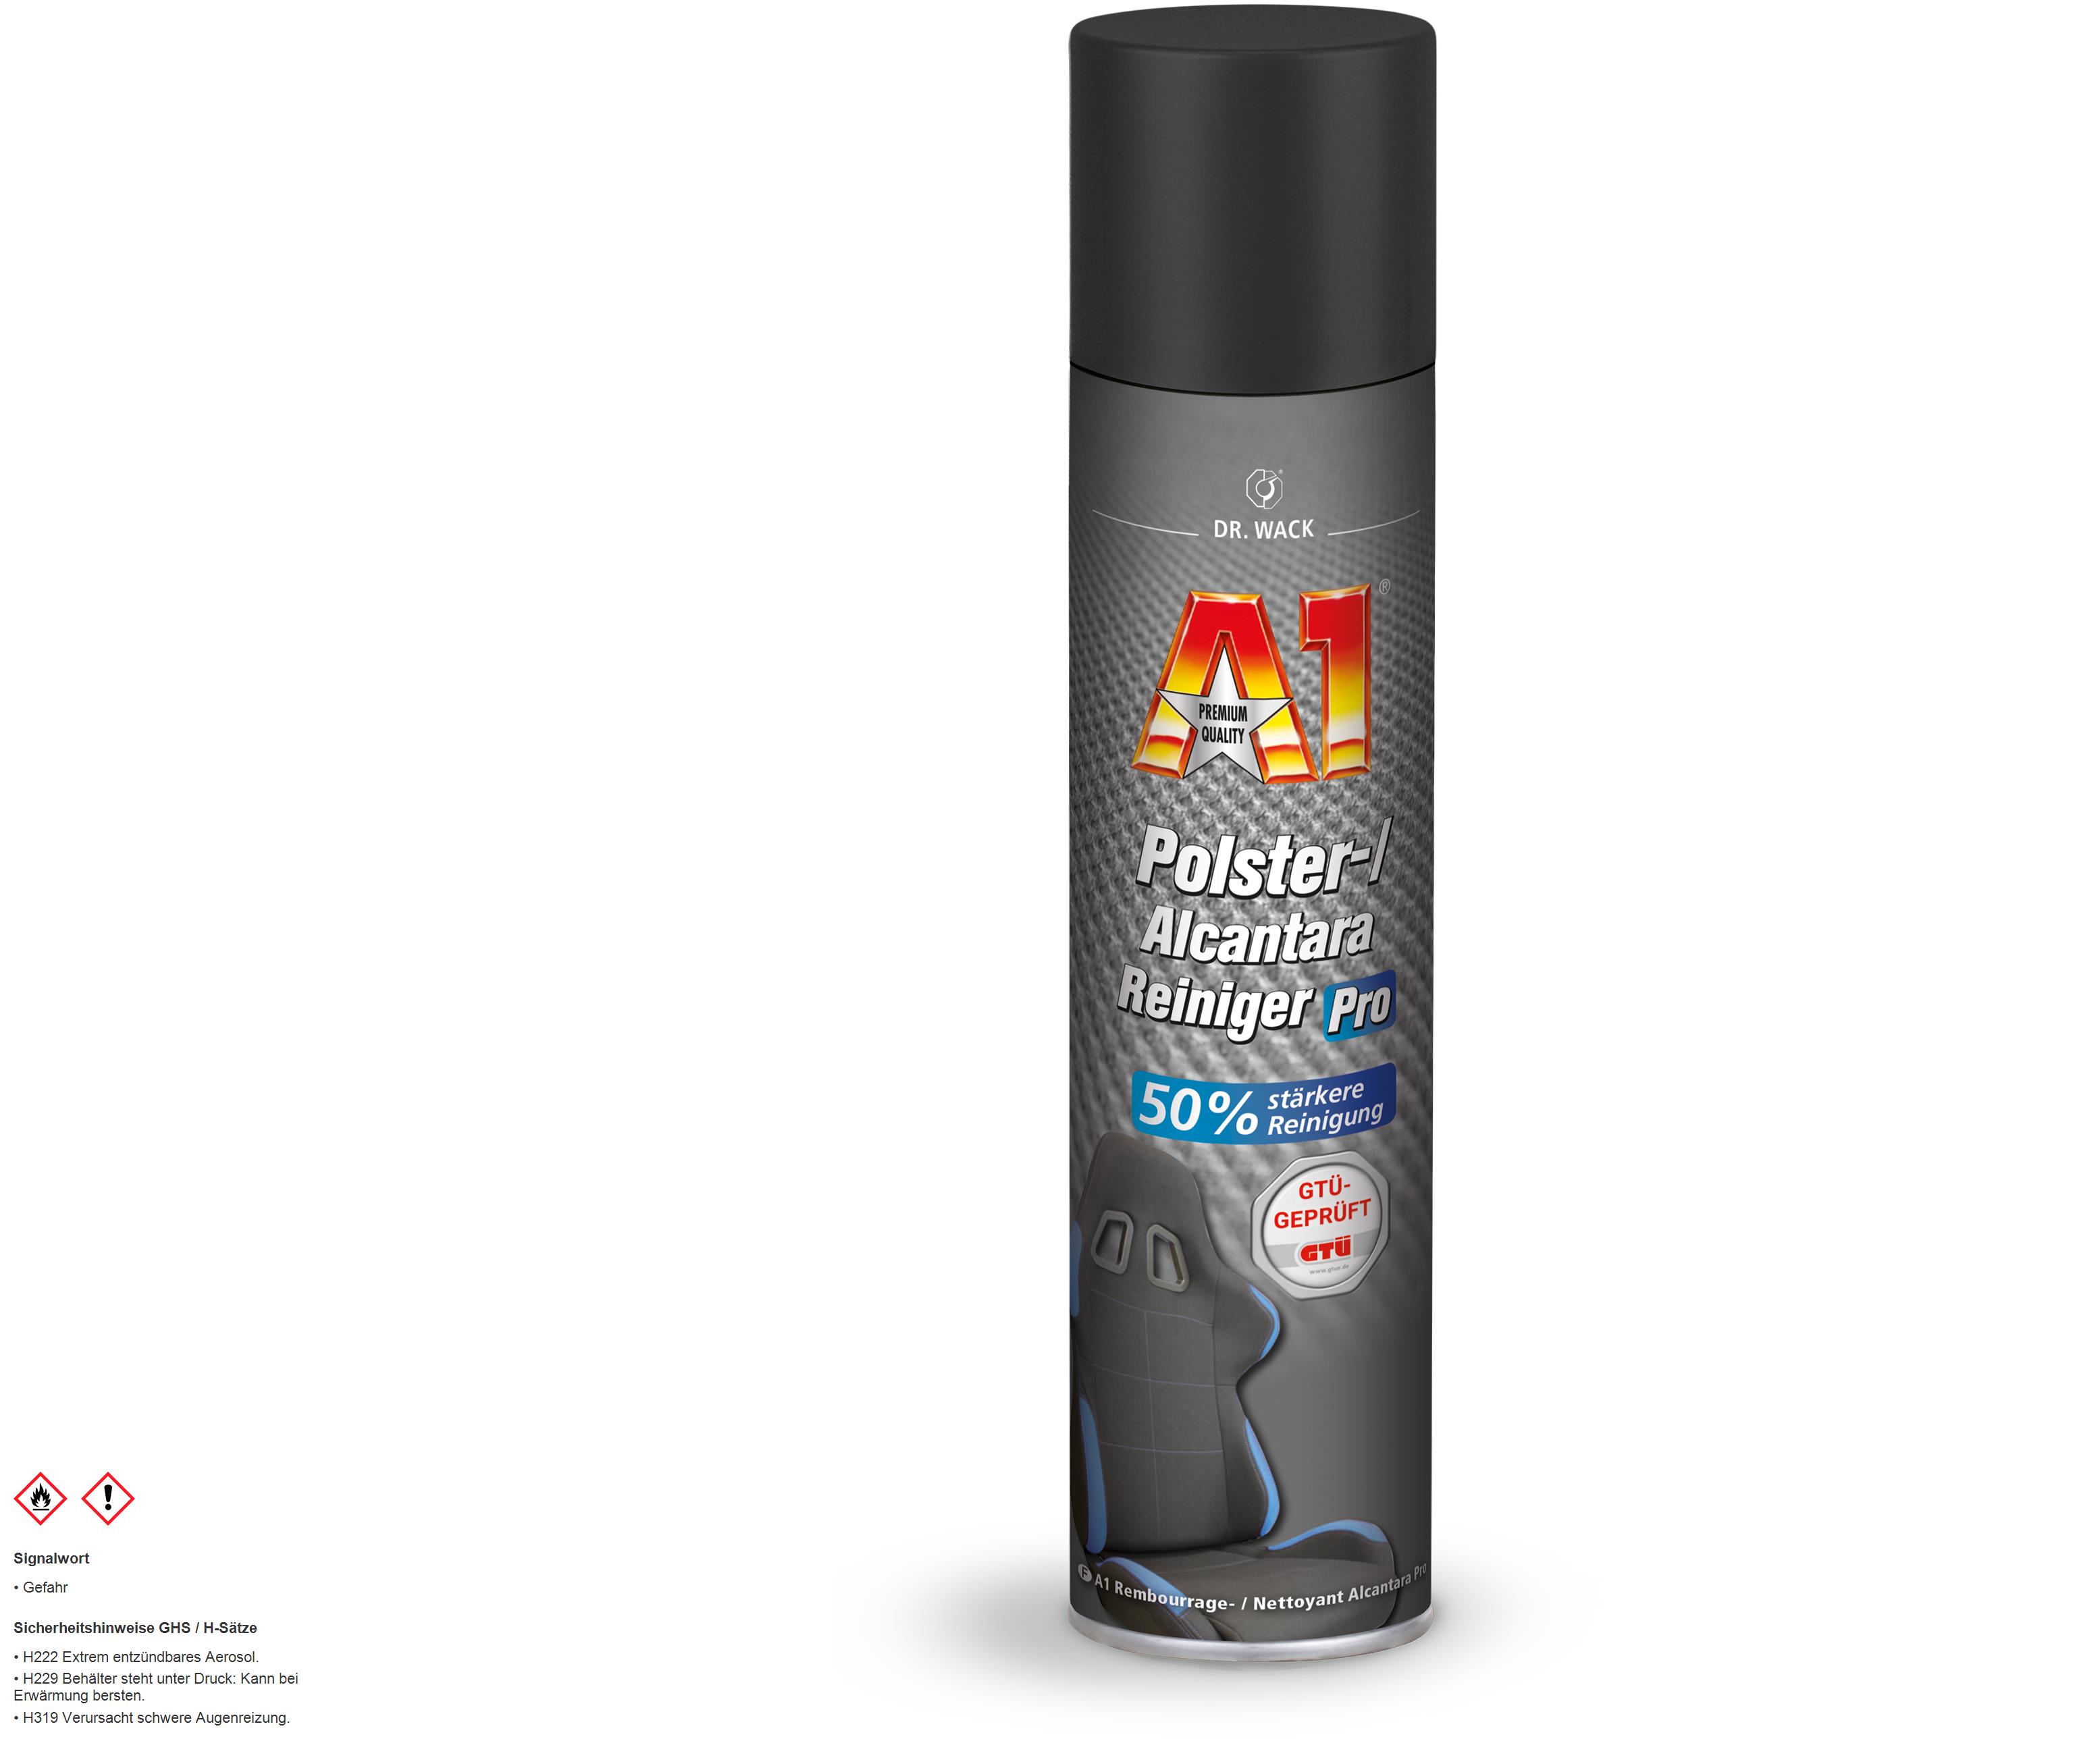 Dr.Wack A1 Polster-/Alcantara Reiniger Pro Polster-Schaum-Reiniger 400 ml